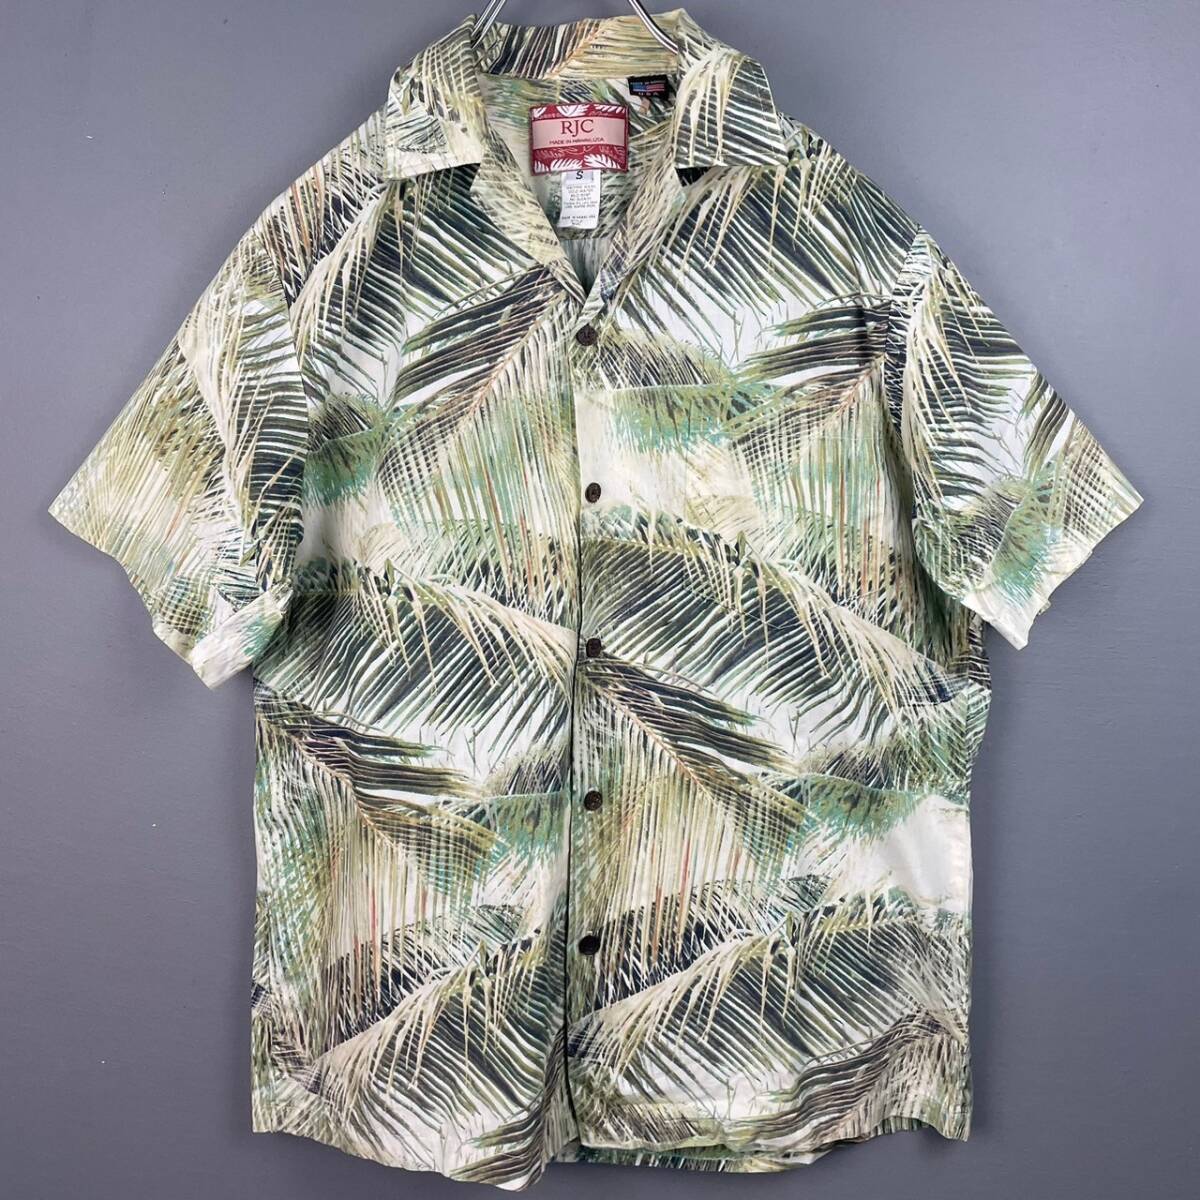 Wm697 Гаваи производства RJC Robert *J * Clancy короткий рукав гавайская рубашка Hawaiian открытый цвет . воротник общий рисунок мужской свободно 